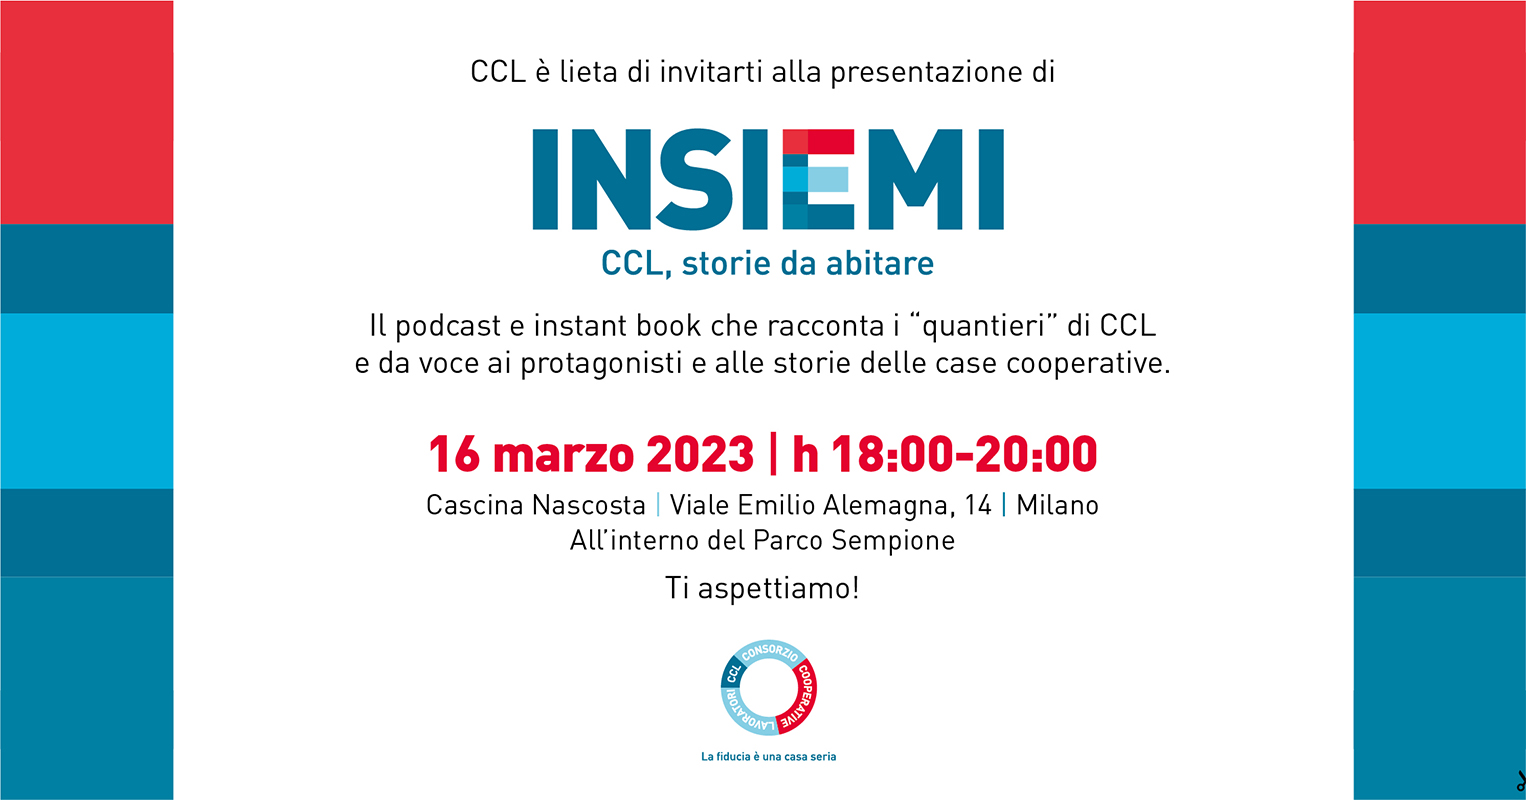 CCL e Itaca Comunicazione presentano il progetto multimediale “INSIEMI: CCL, Storie da abitare”